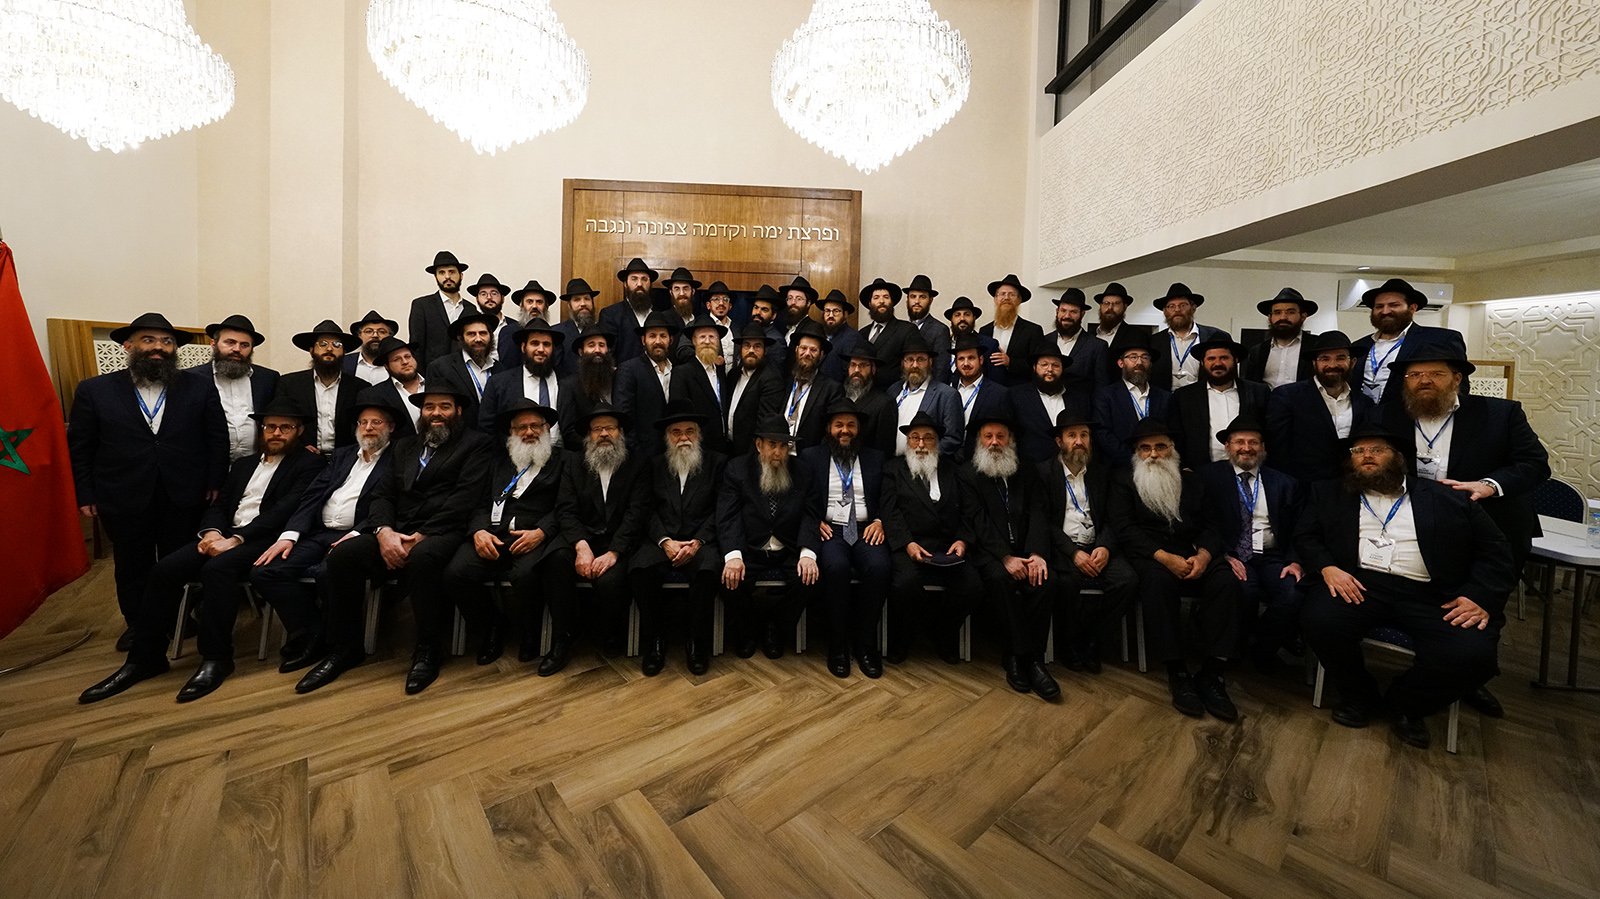 Los participantes en una conferencia jasídica de Chabad-Lubavitch posan juntos en Marruecos, en mayo de 2023. Foto de Avi Winner - Merkos 302/Chabad.org